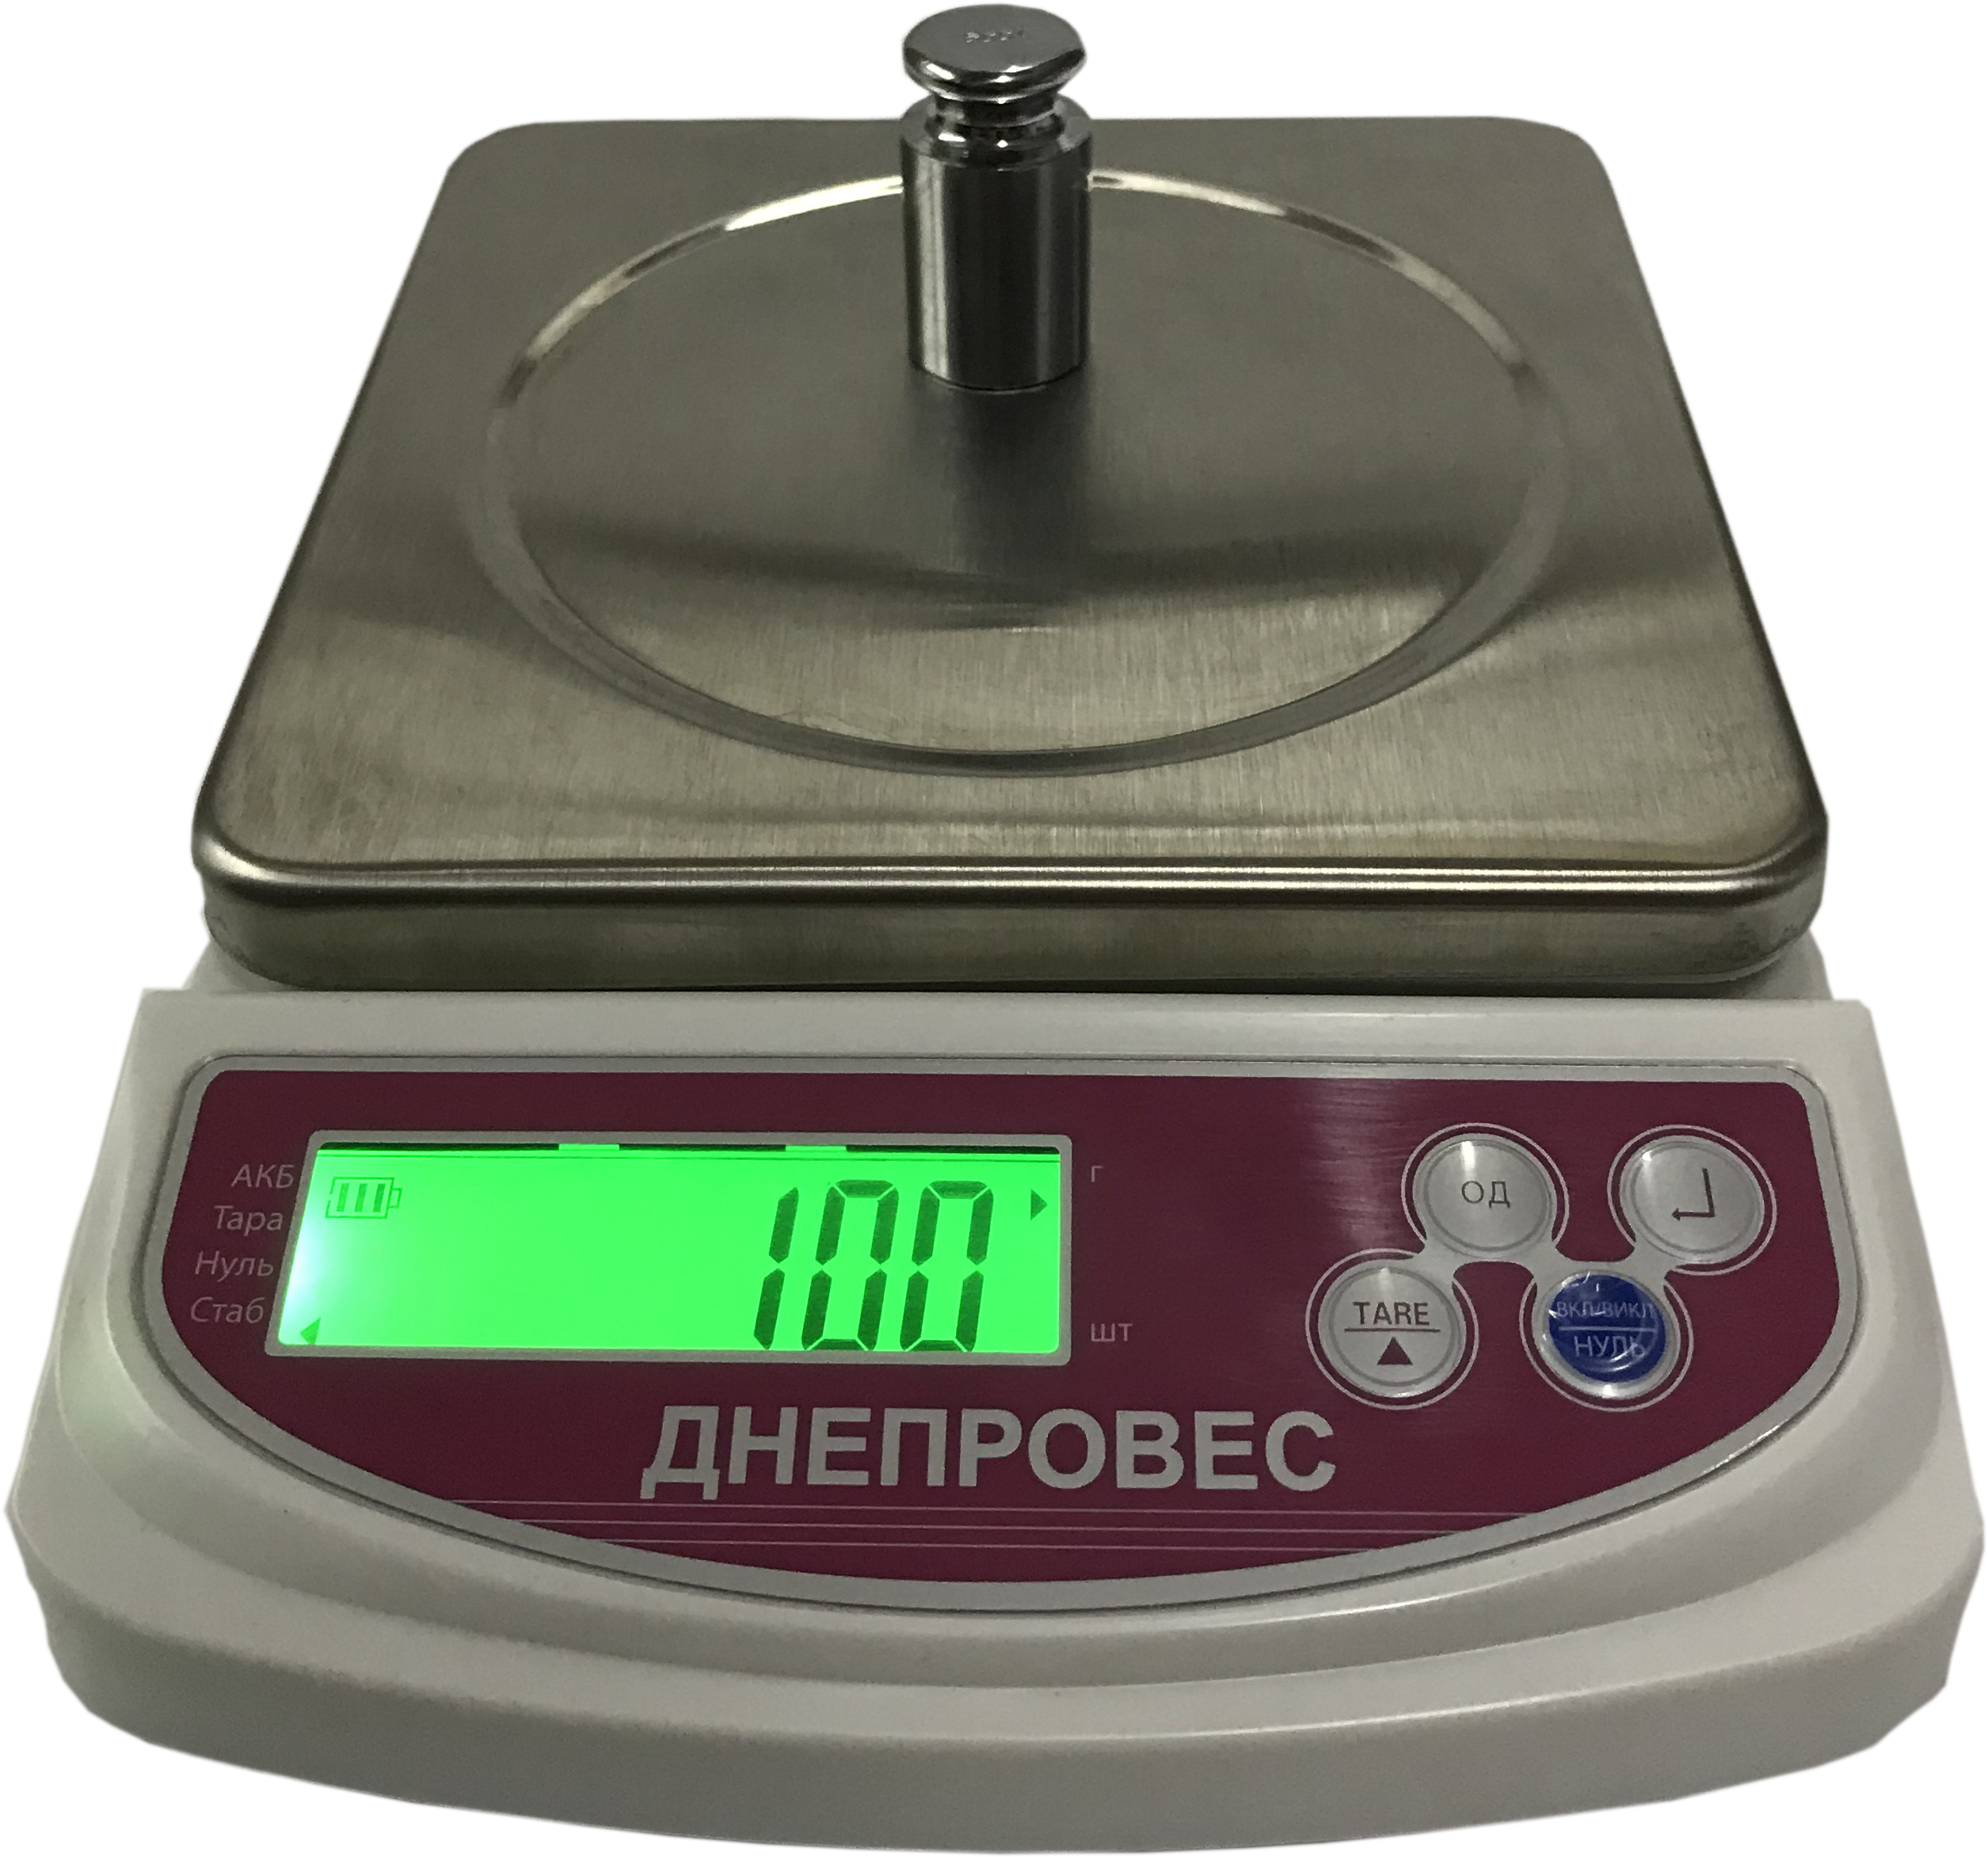 Весы кухонные Днепровес ДИ-6 на 6 кг